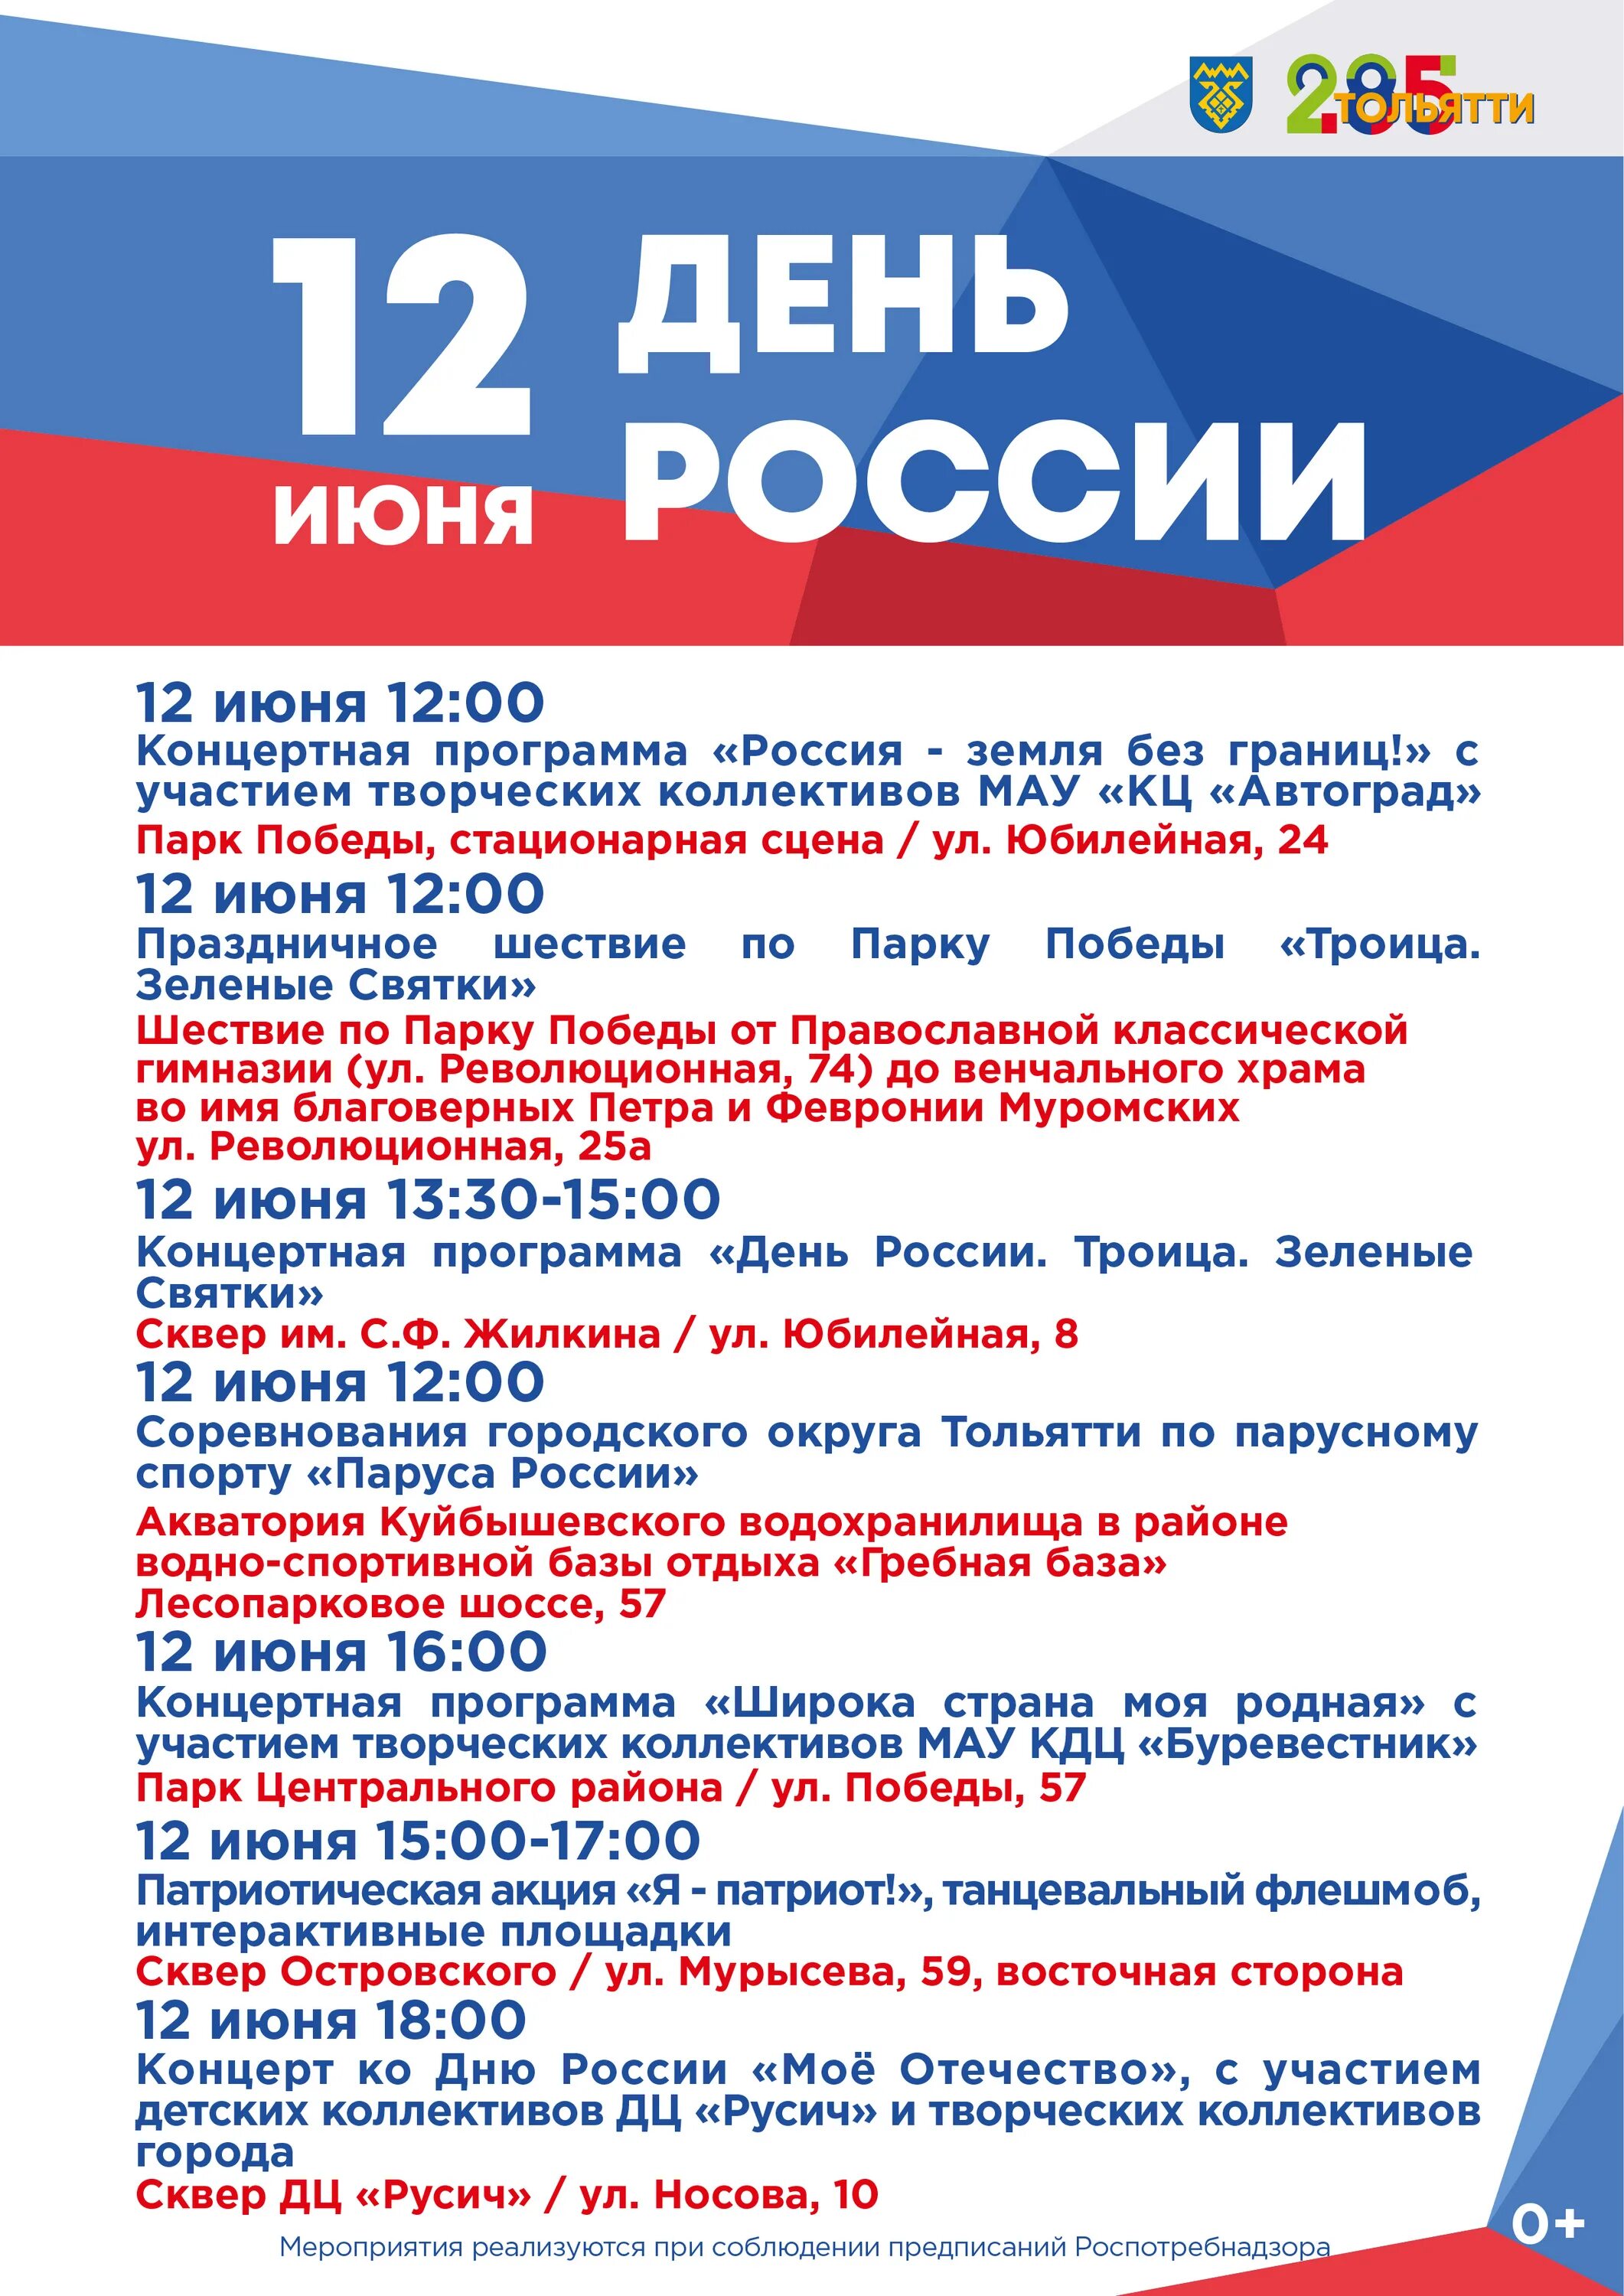 12 июня программы. Афиша празднования дня России. Программа мероприятия. Программа на 12 июня. С днем России.